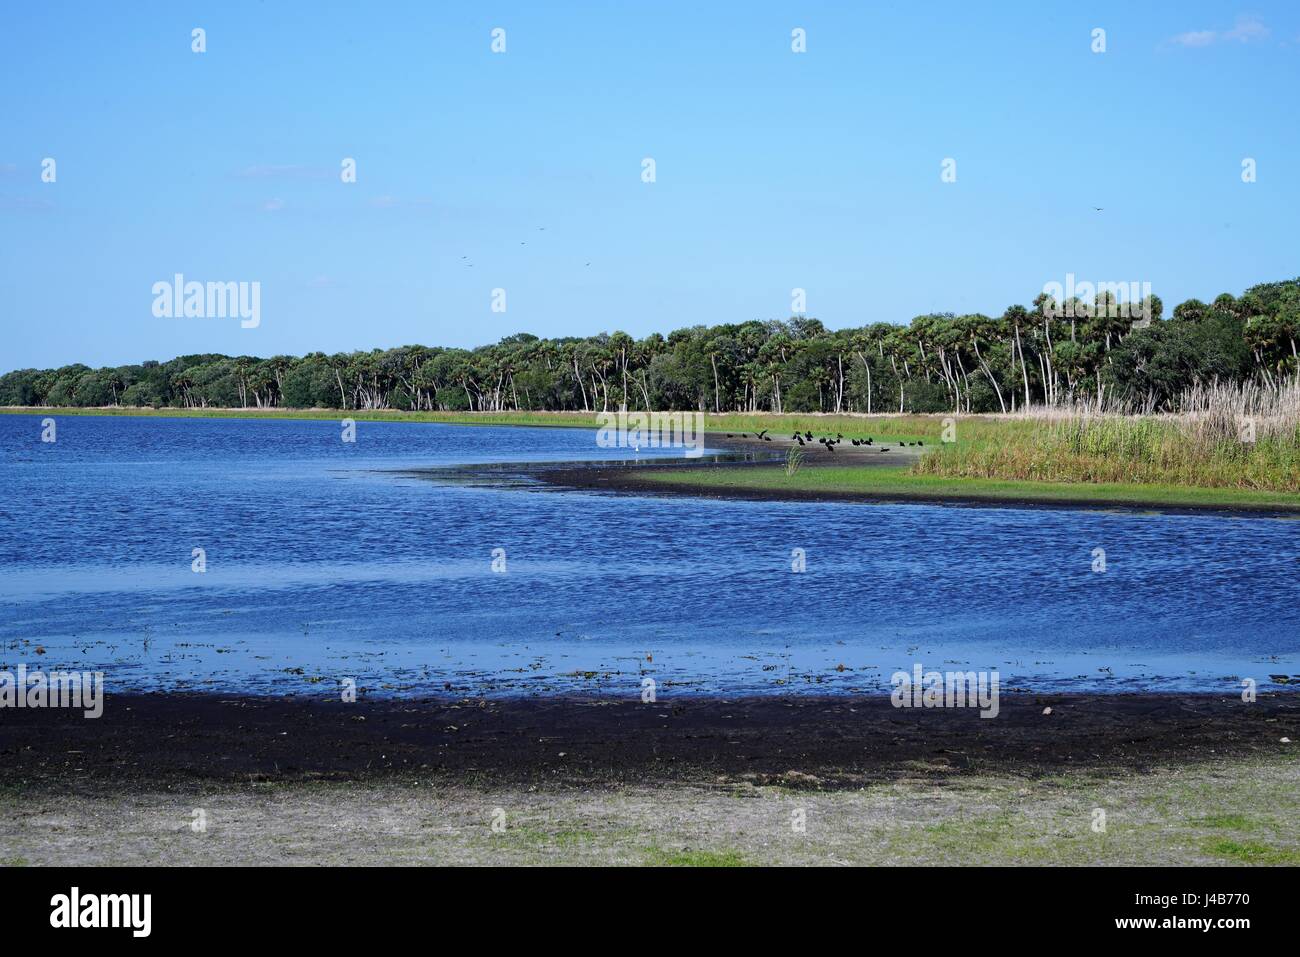 Un grand groupe de vautours autour de la mouture sur la rive de la Myakka River dans le sud-ouest de la Floride. Banque D'Images